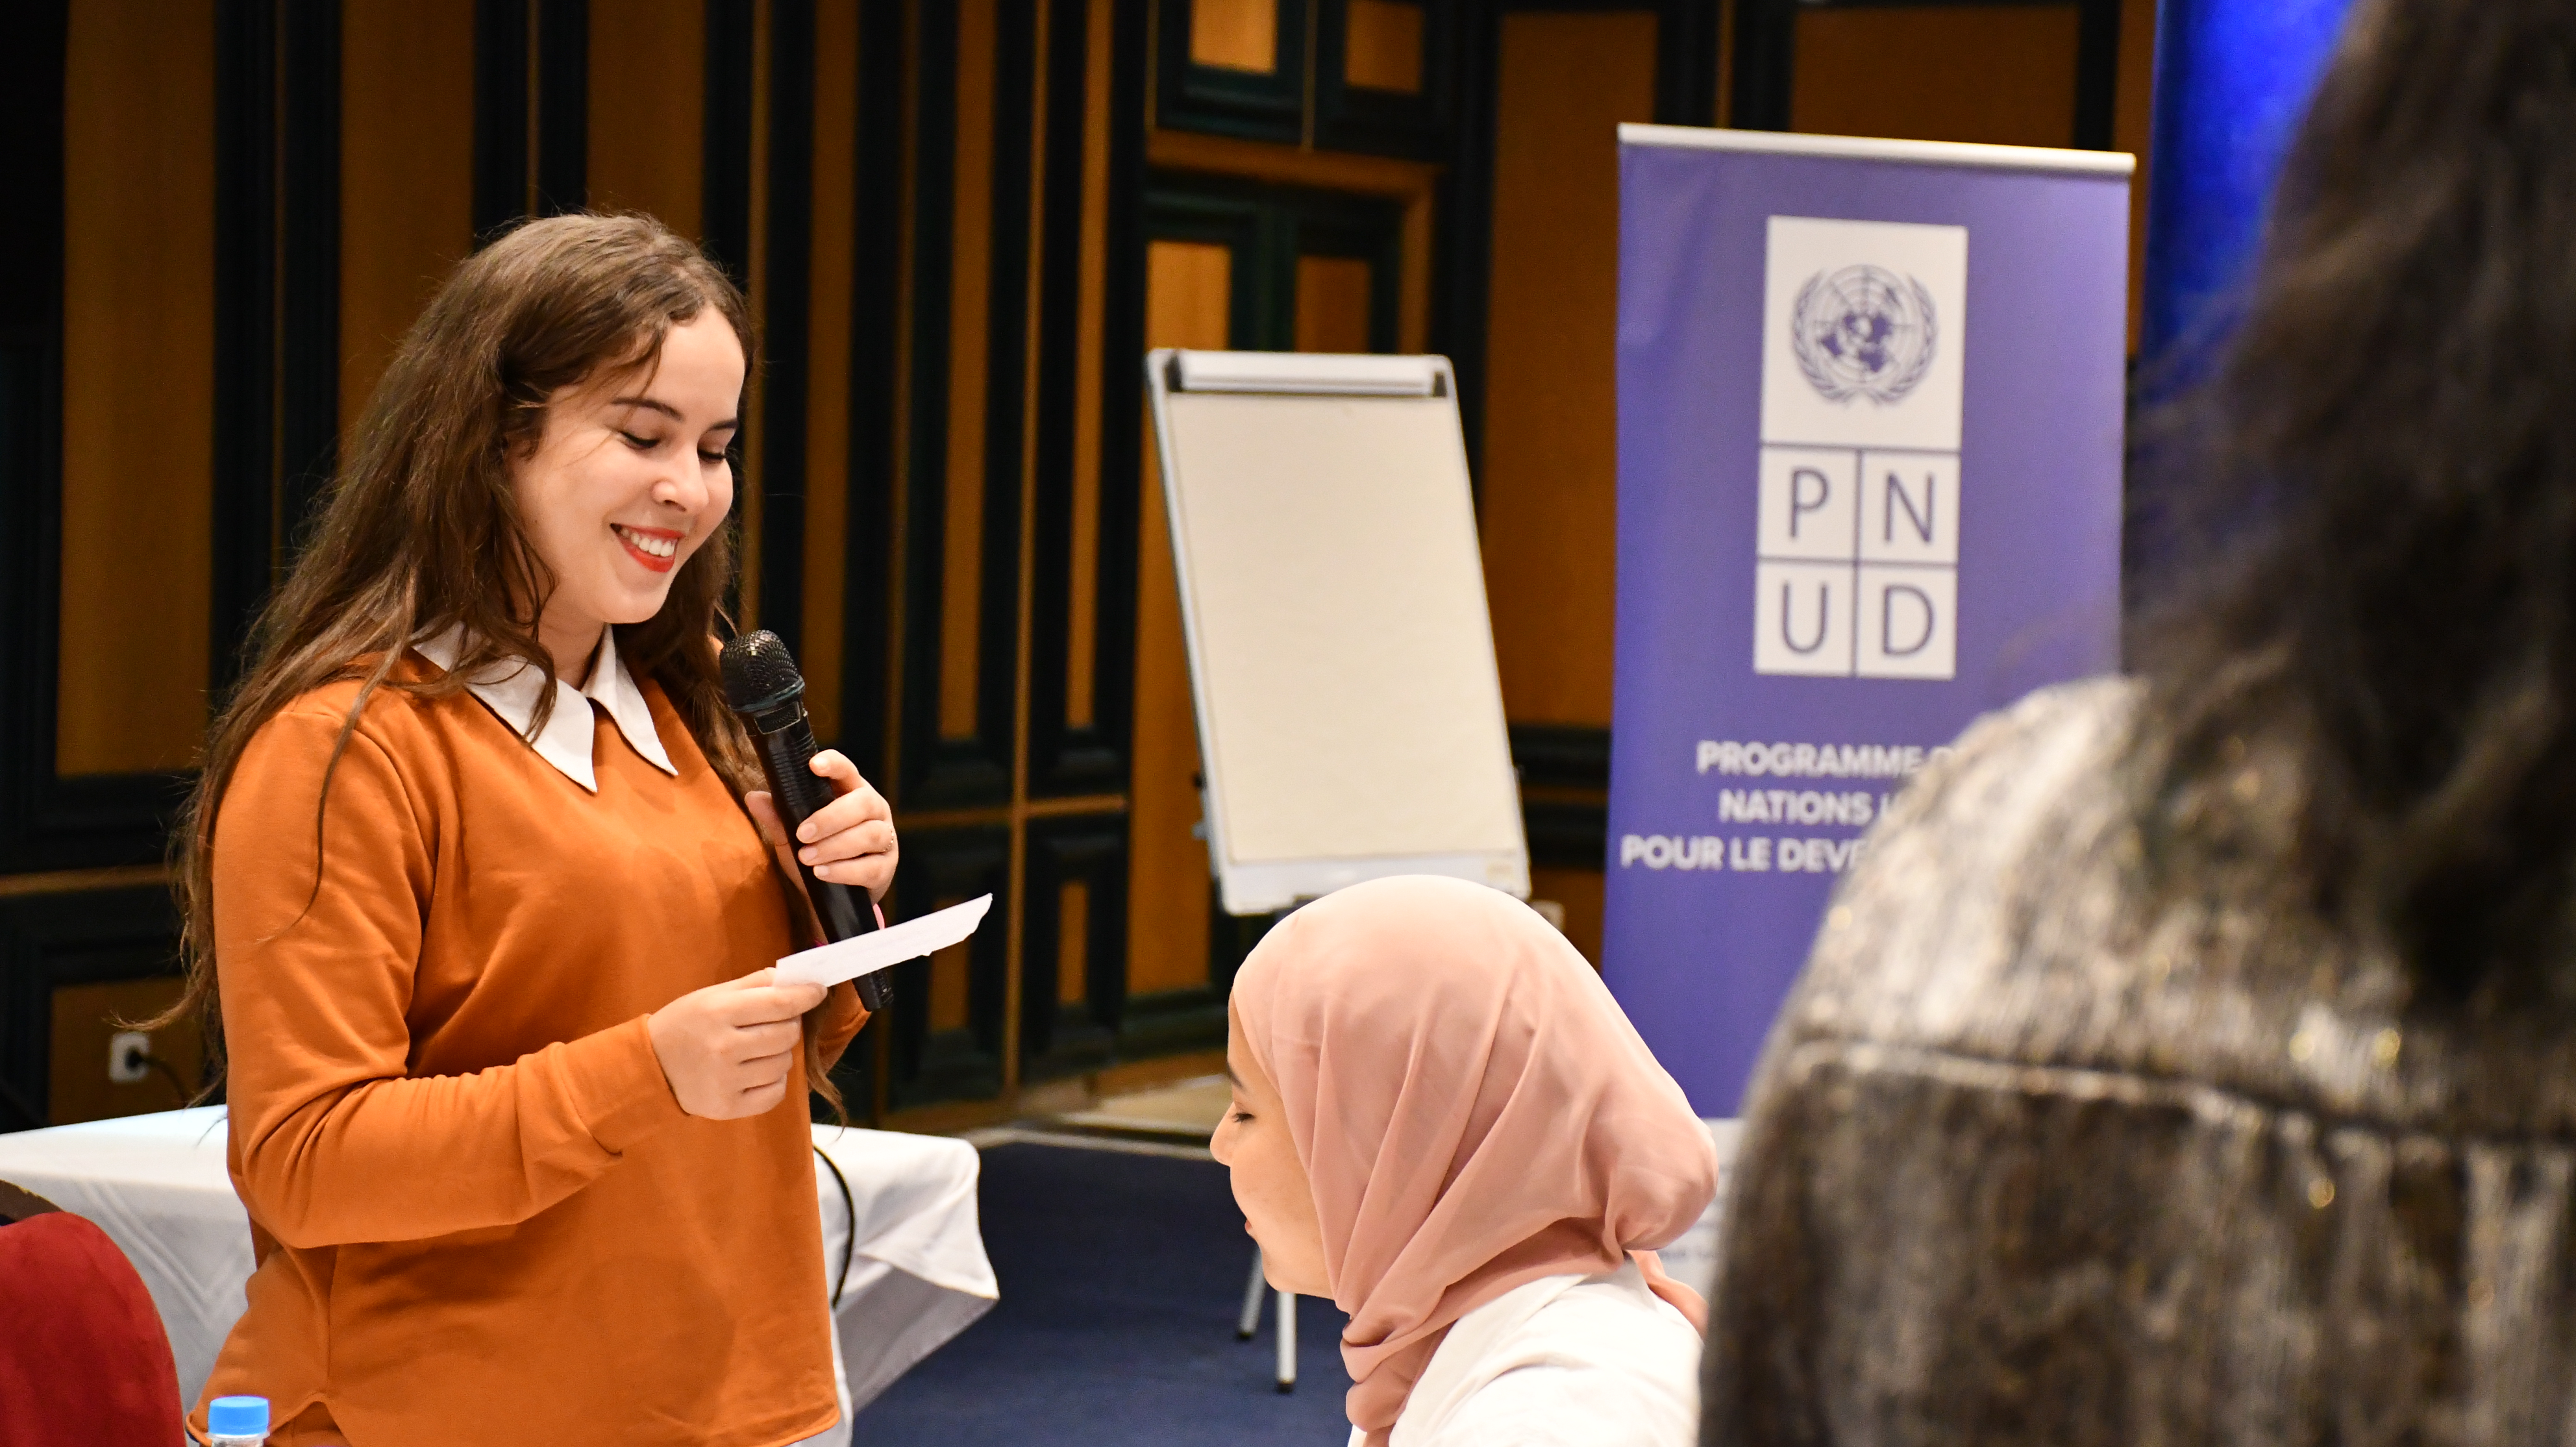 Jeune femme entrain de parler au micro devant un public jeune lors d'un workshop à djerba au sud tunisien afin de promouvoir sa région